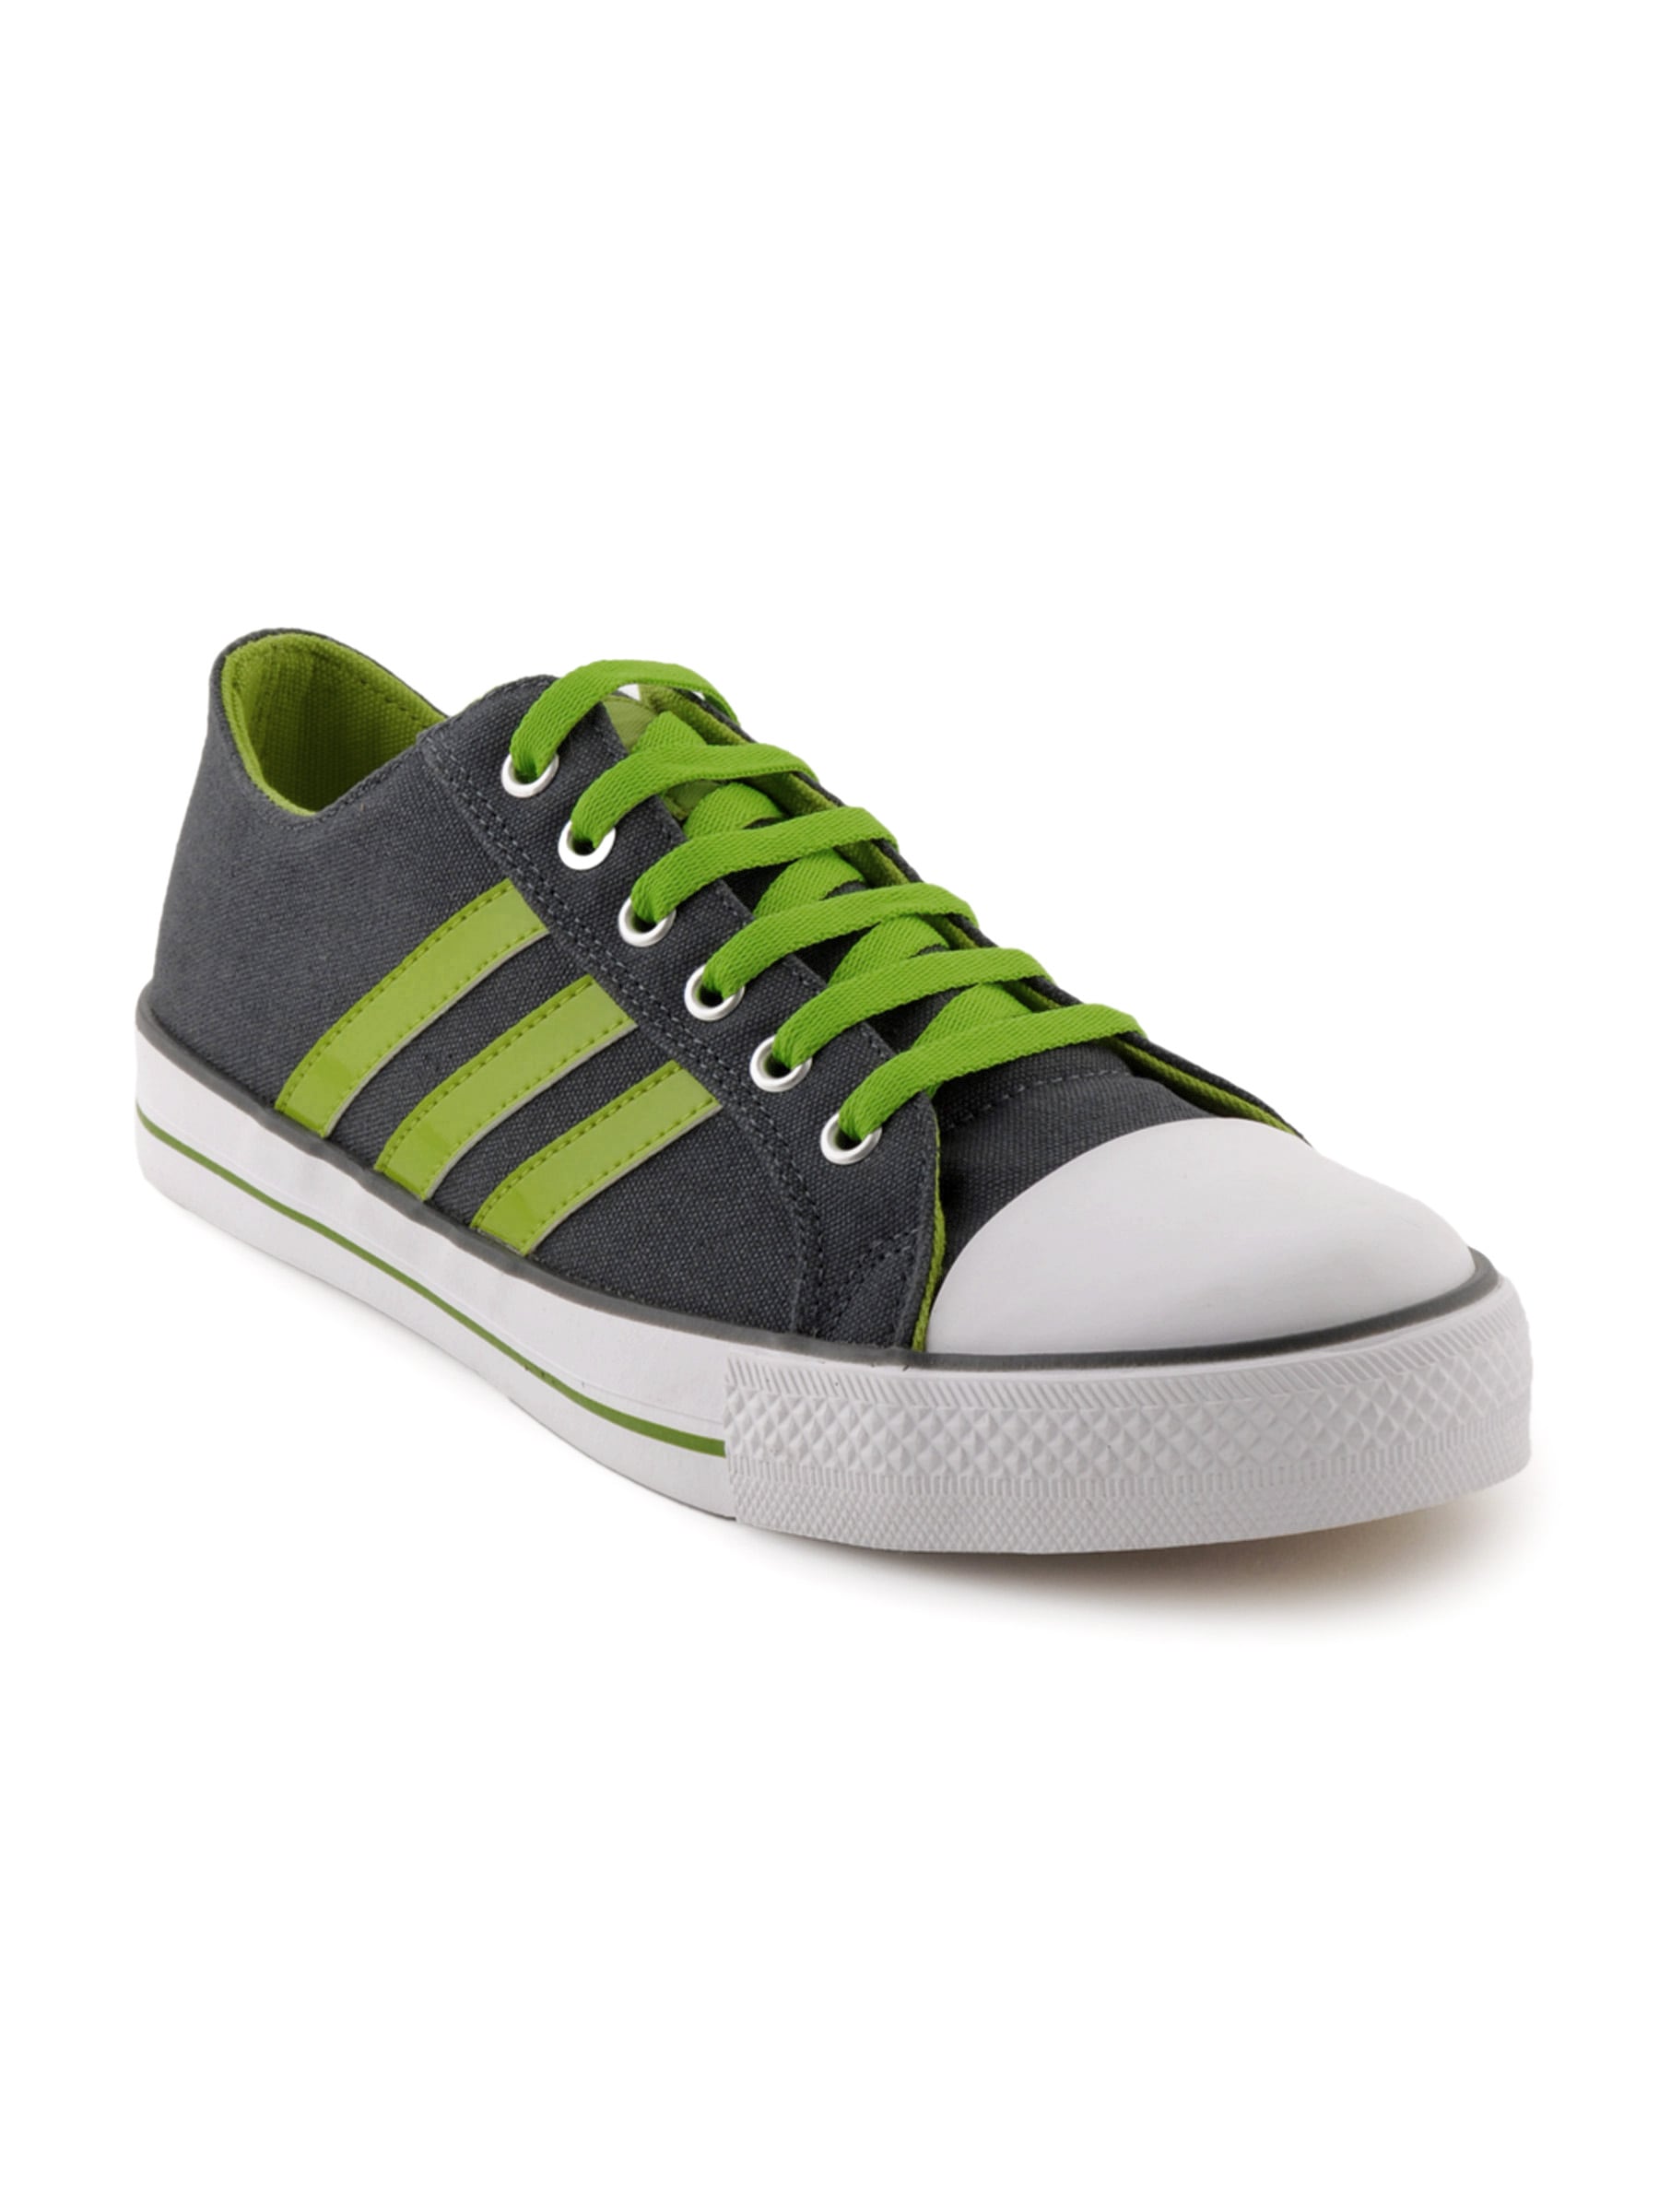 ADIDAS Men Vigor Green Casual Shoes